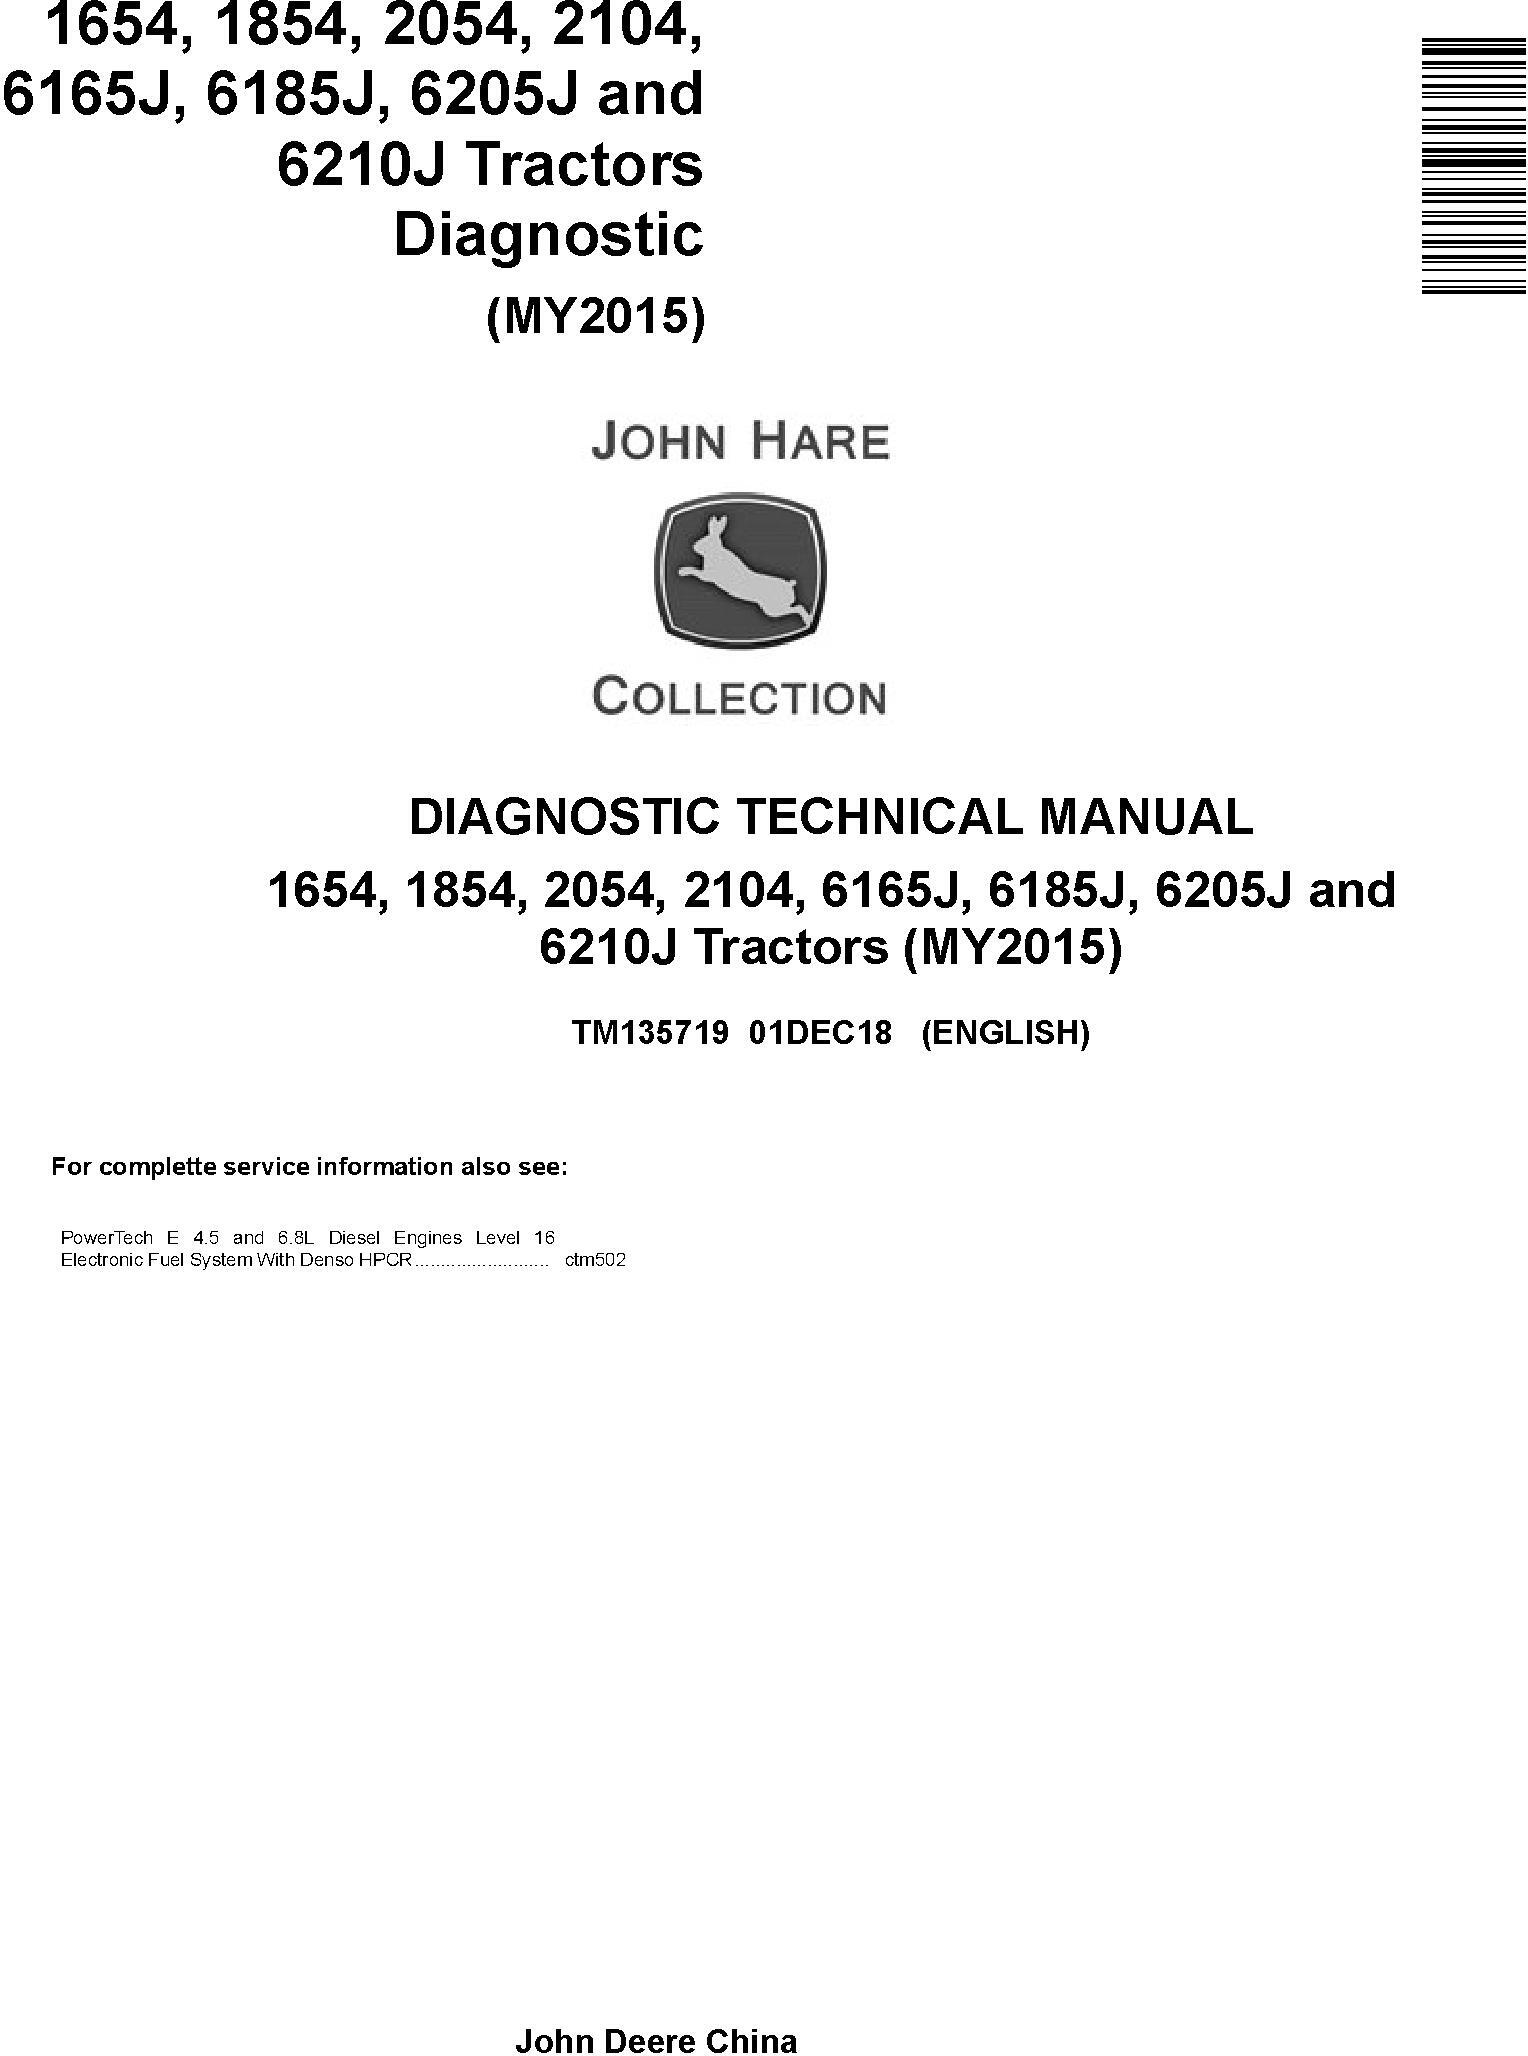 John Deere 6165J(6J-1654), 6185J(6J-1854), 6205J(6J-2054), 6210J(6J-2104) Tractors Diagnostic Manual (TM135719)